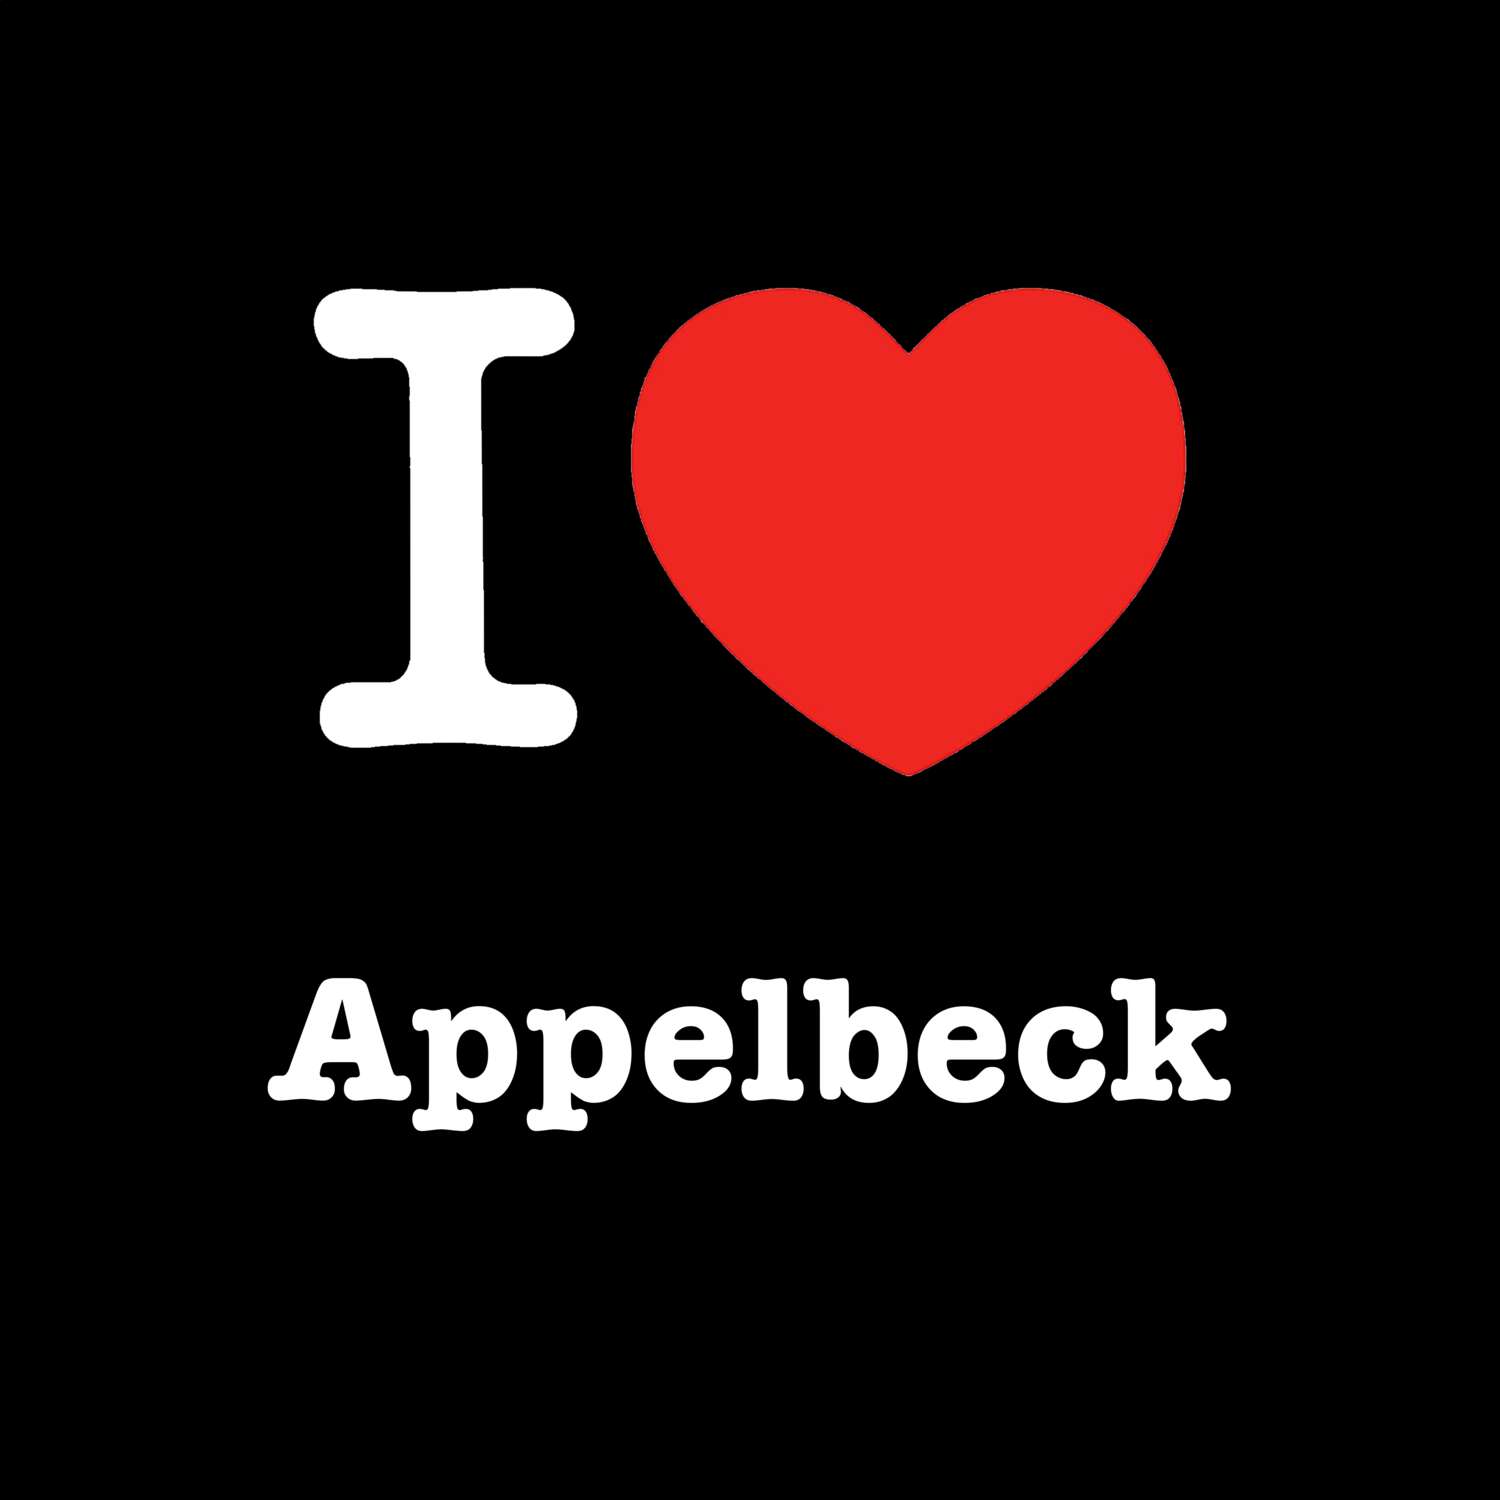 Appelbeck T-Shirt »I love«